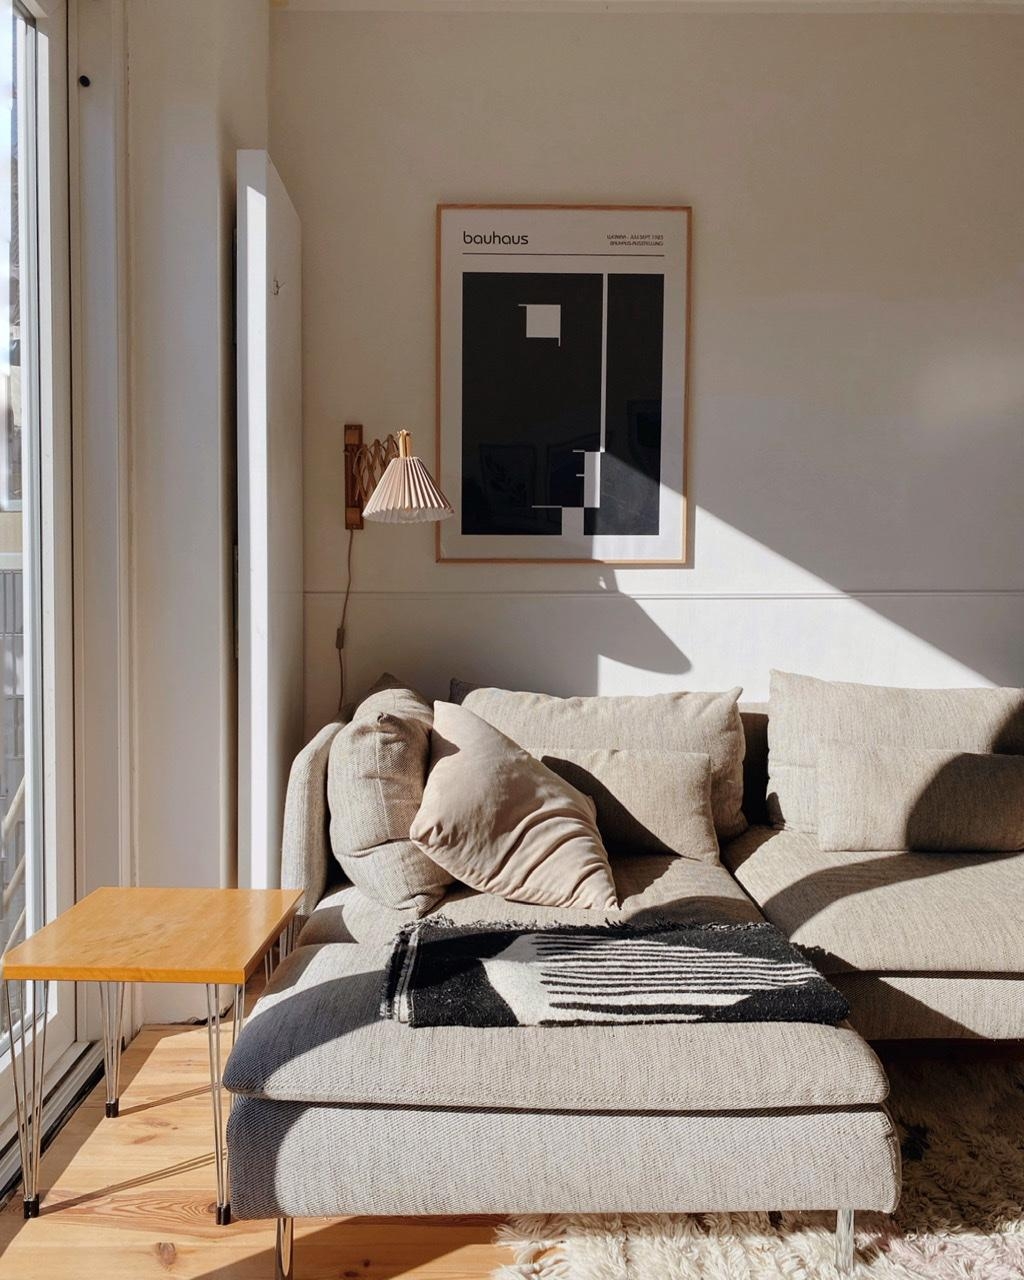 Sonne im Haus.
#wohnzimmer #sofa #ikea #poster #lampe 